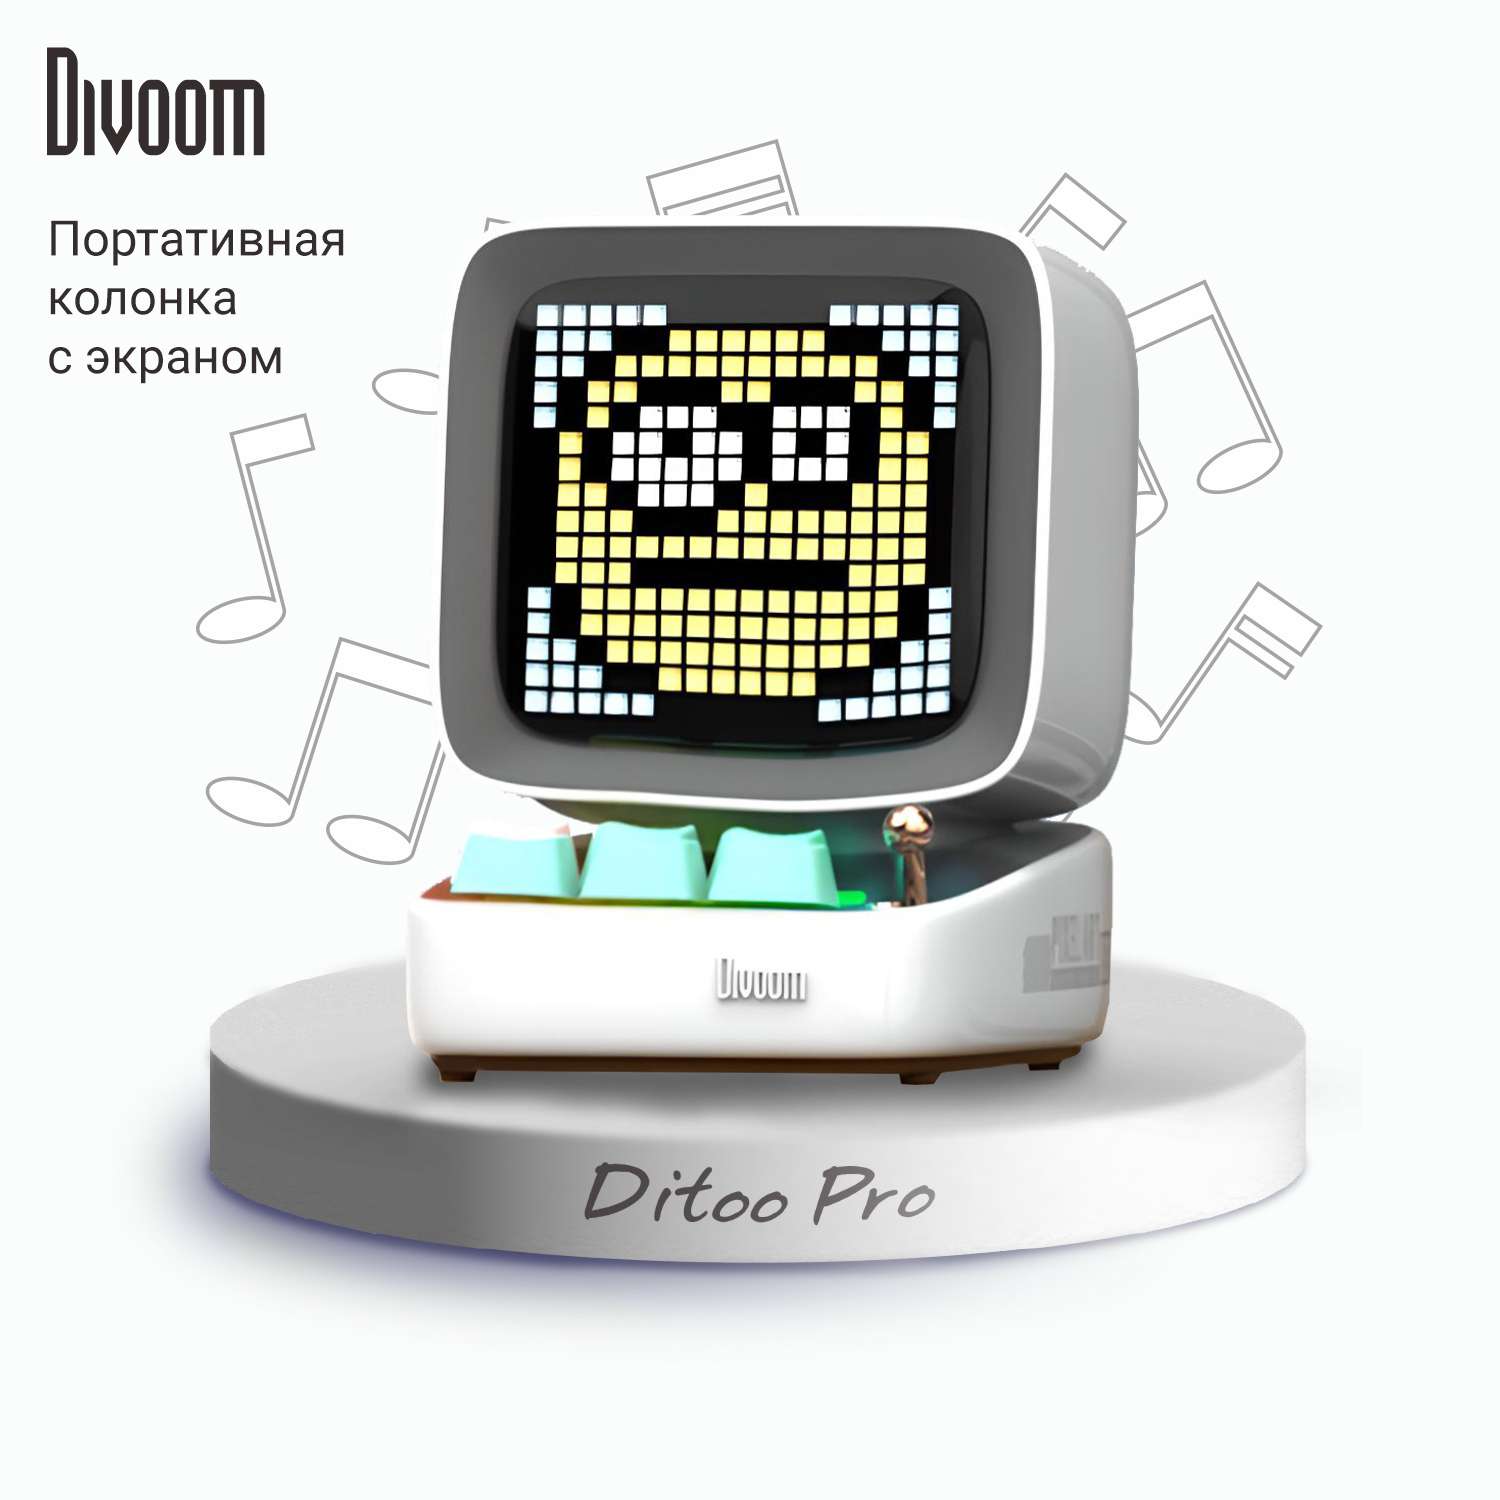 Беспроводная колонка DIVOOM портативная Ditoo Pro белая с пиксельным LED-дисплеем - фото 1